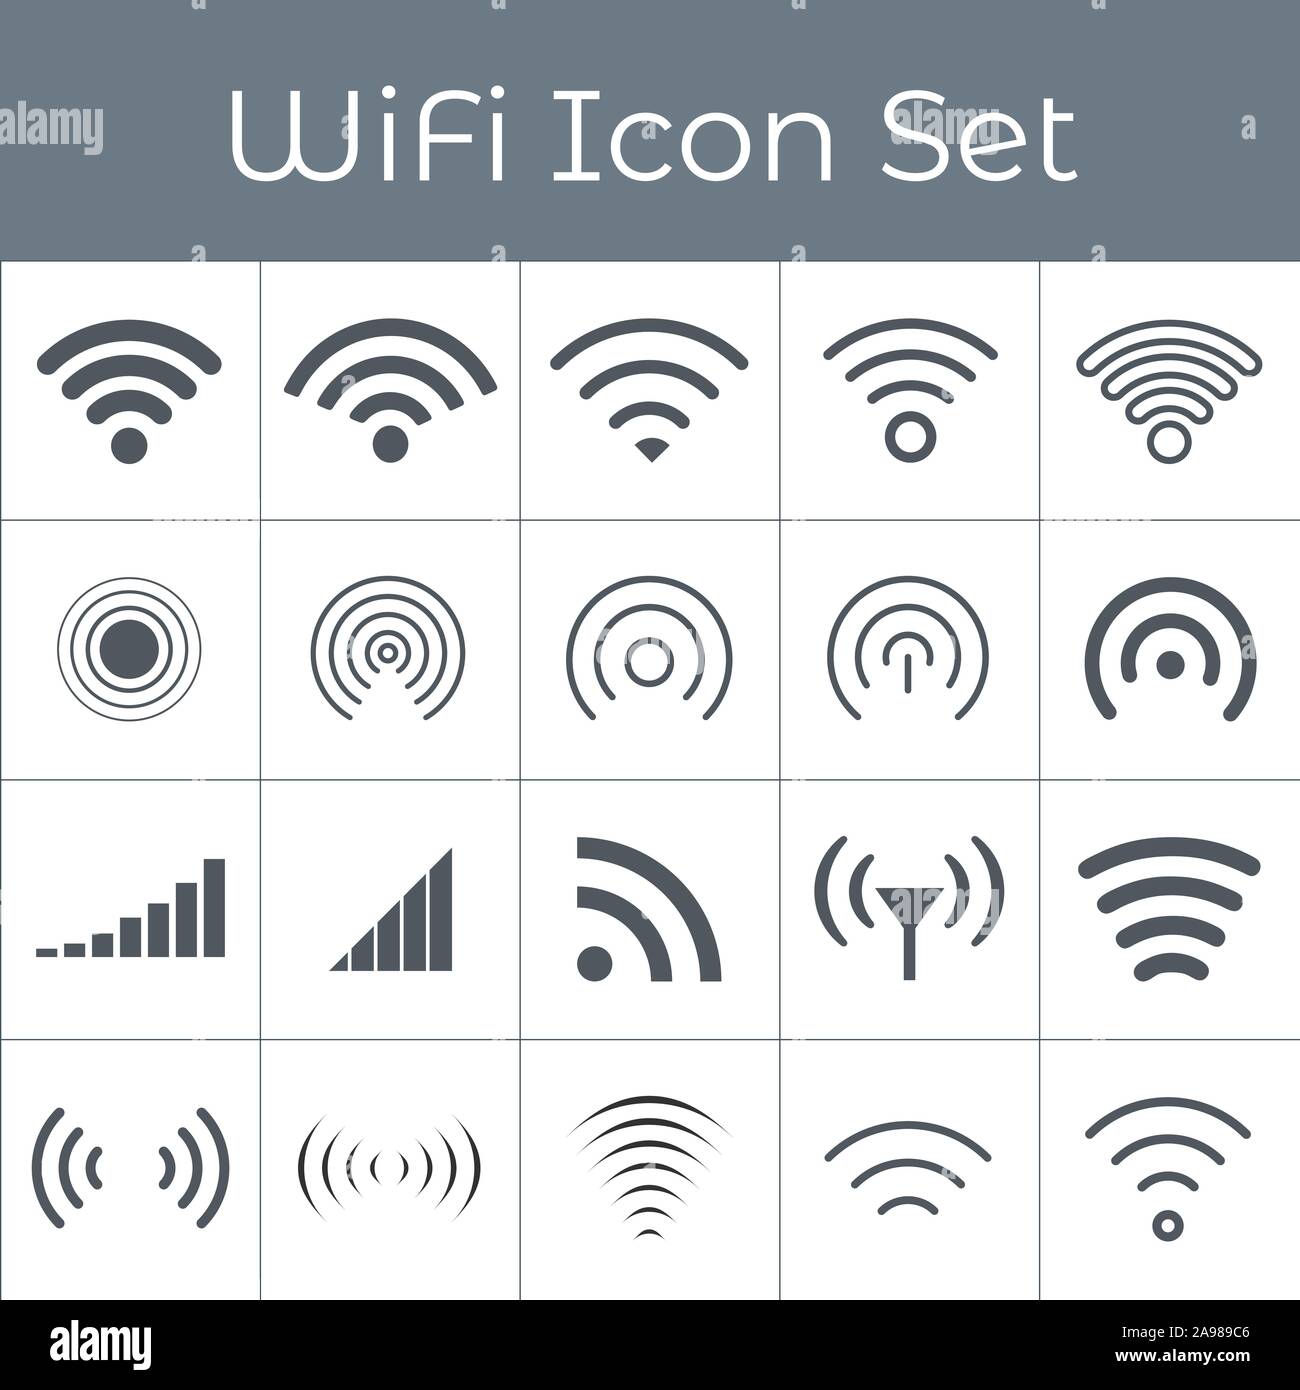 Set mit 20 verschiedenen Grau wireless und wlan Icons für den Fernzugriff und die Kommunikation über Funkwellen. Rundfunkübertragung. Vektor Stock Vektor